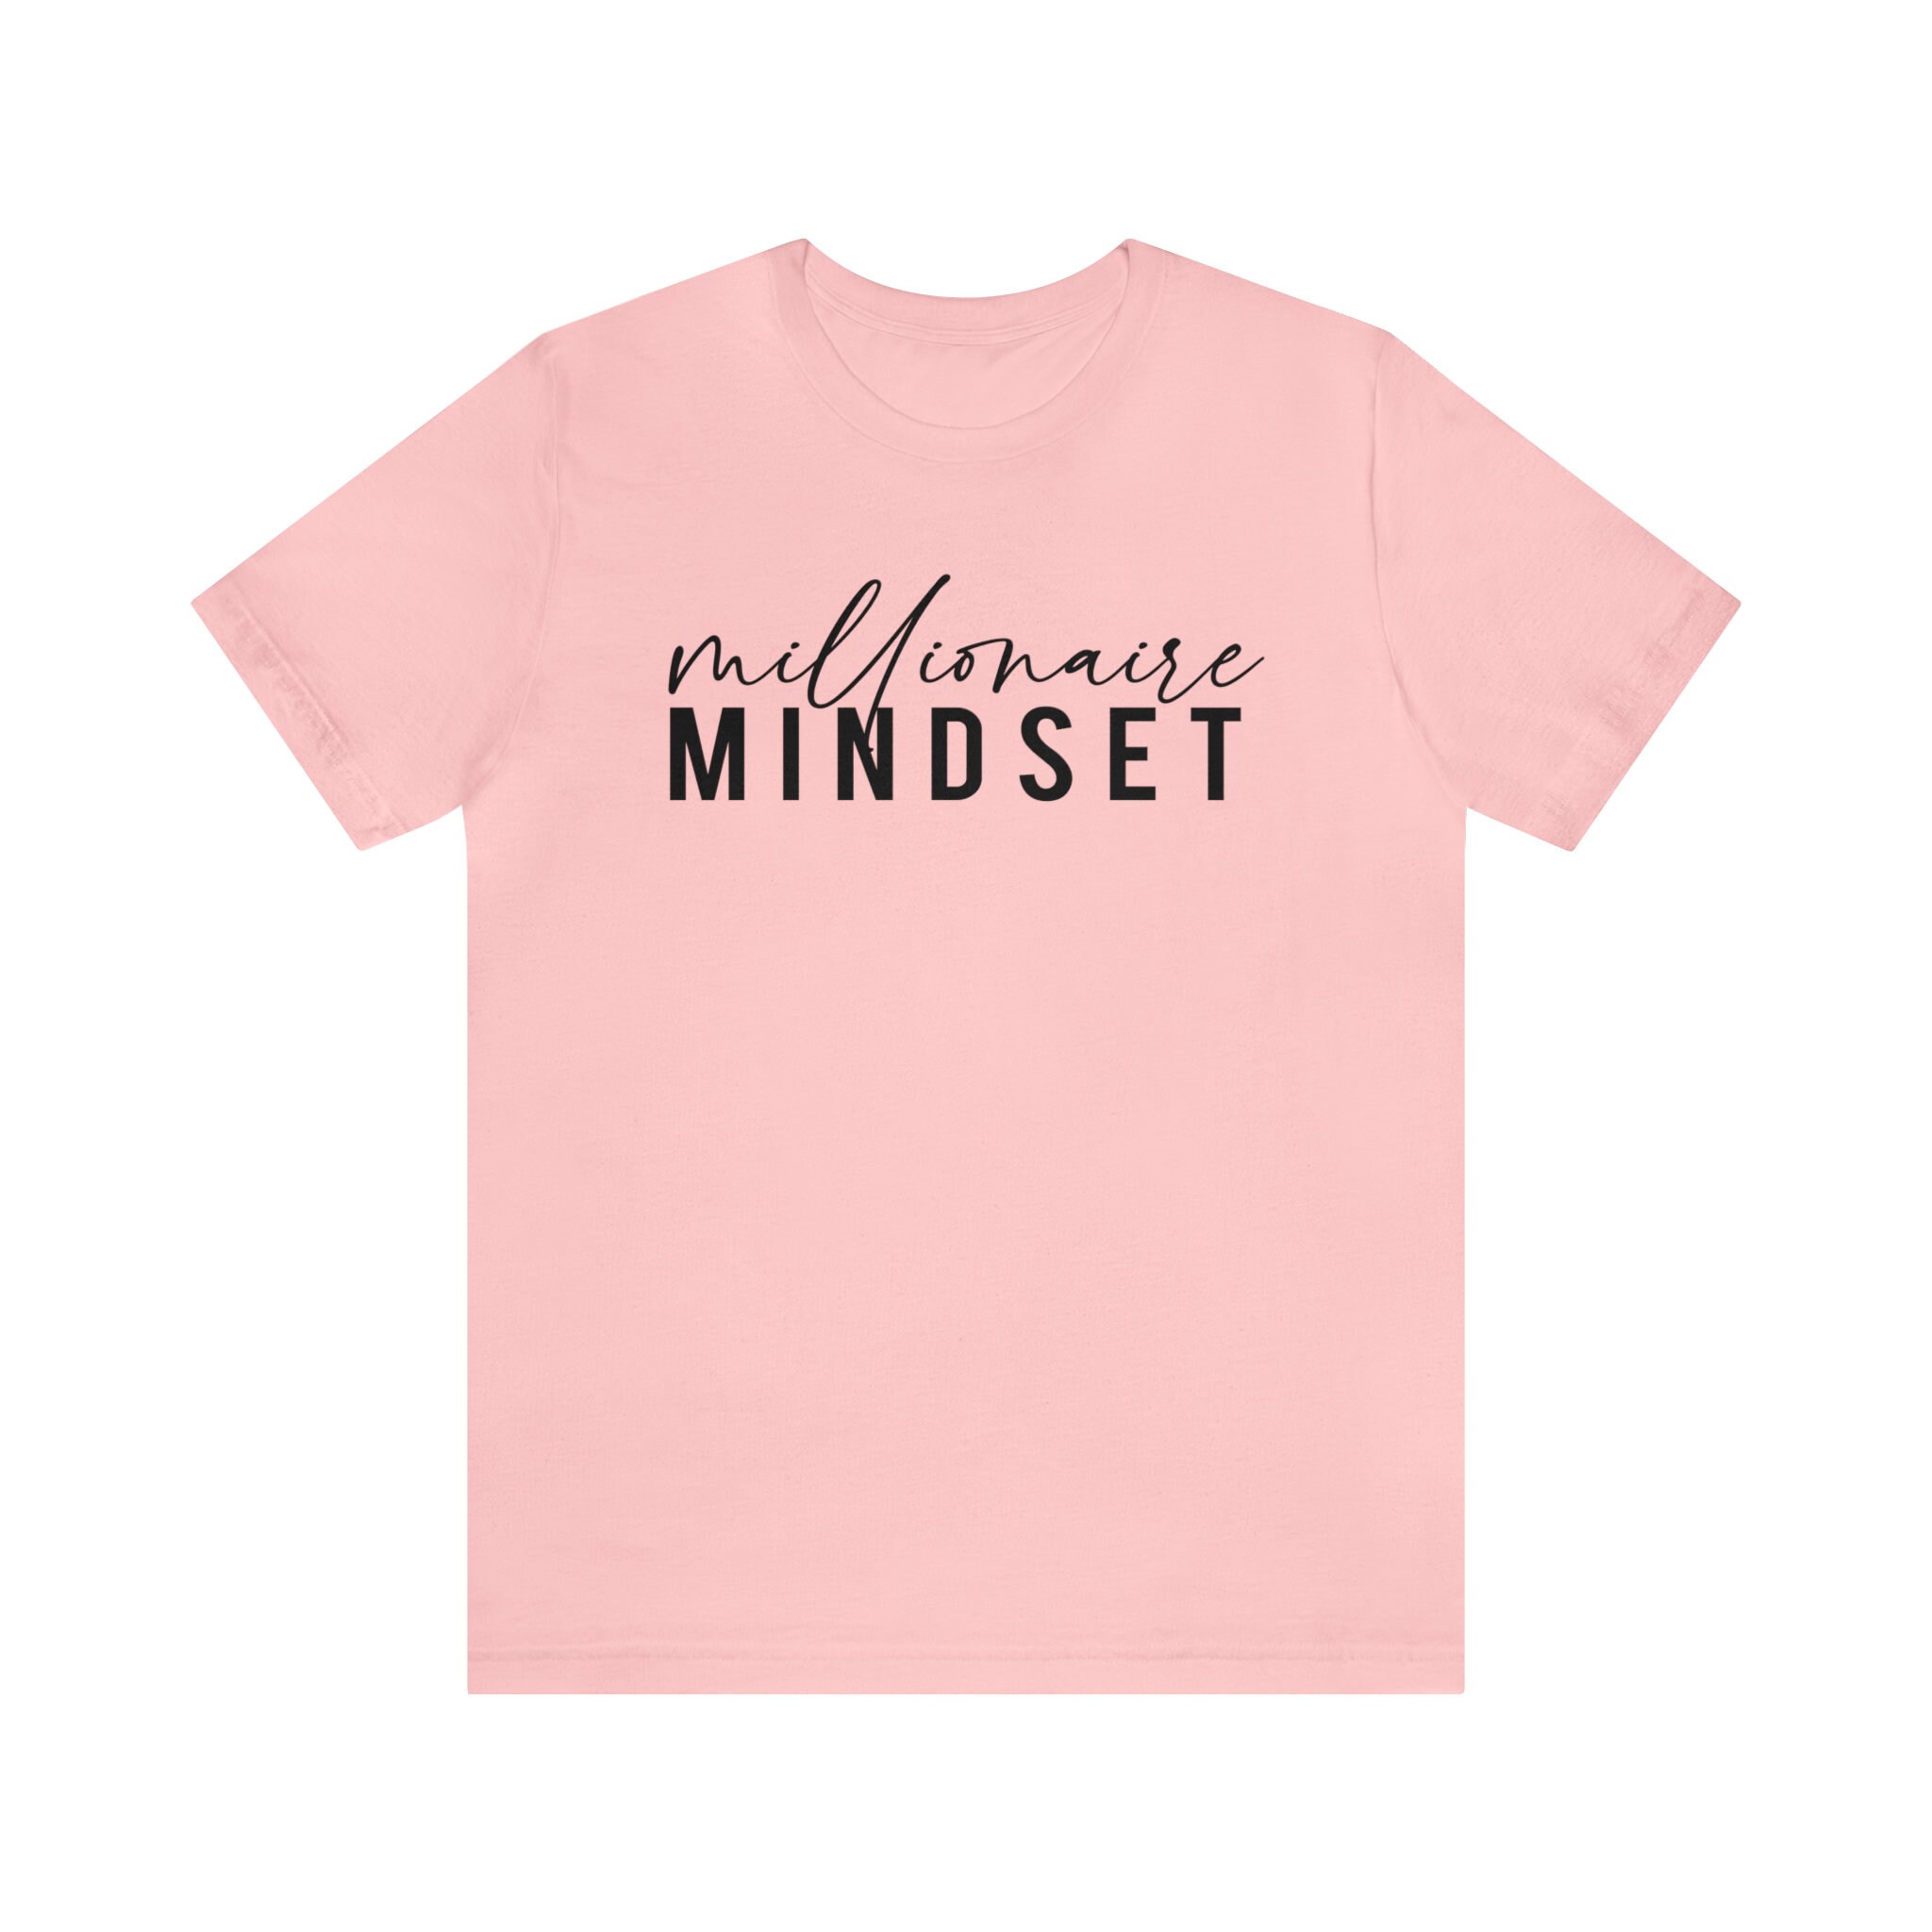 Millionaire Mindset Short Sleeve Tee Growth Mindset Shirt - Etsy